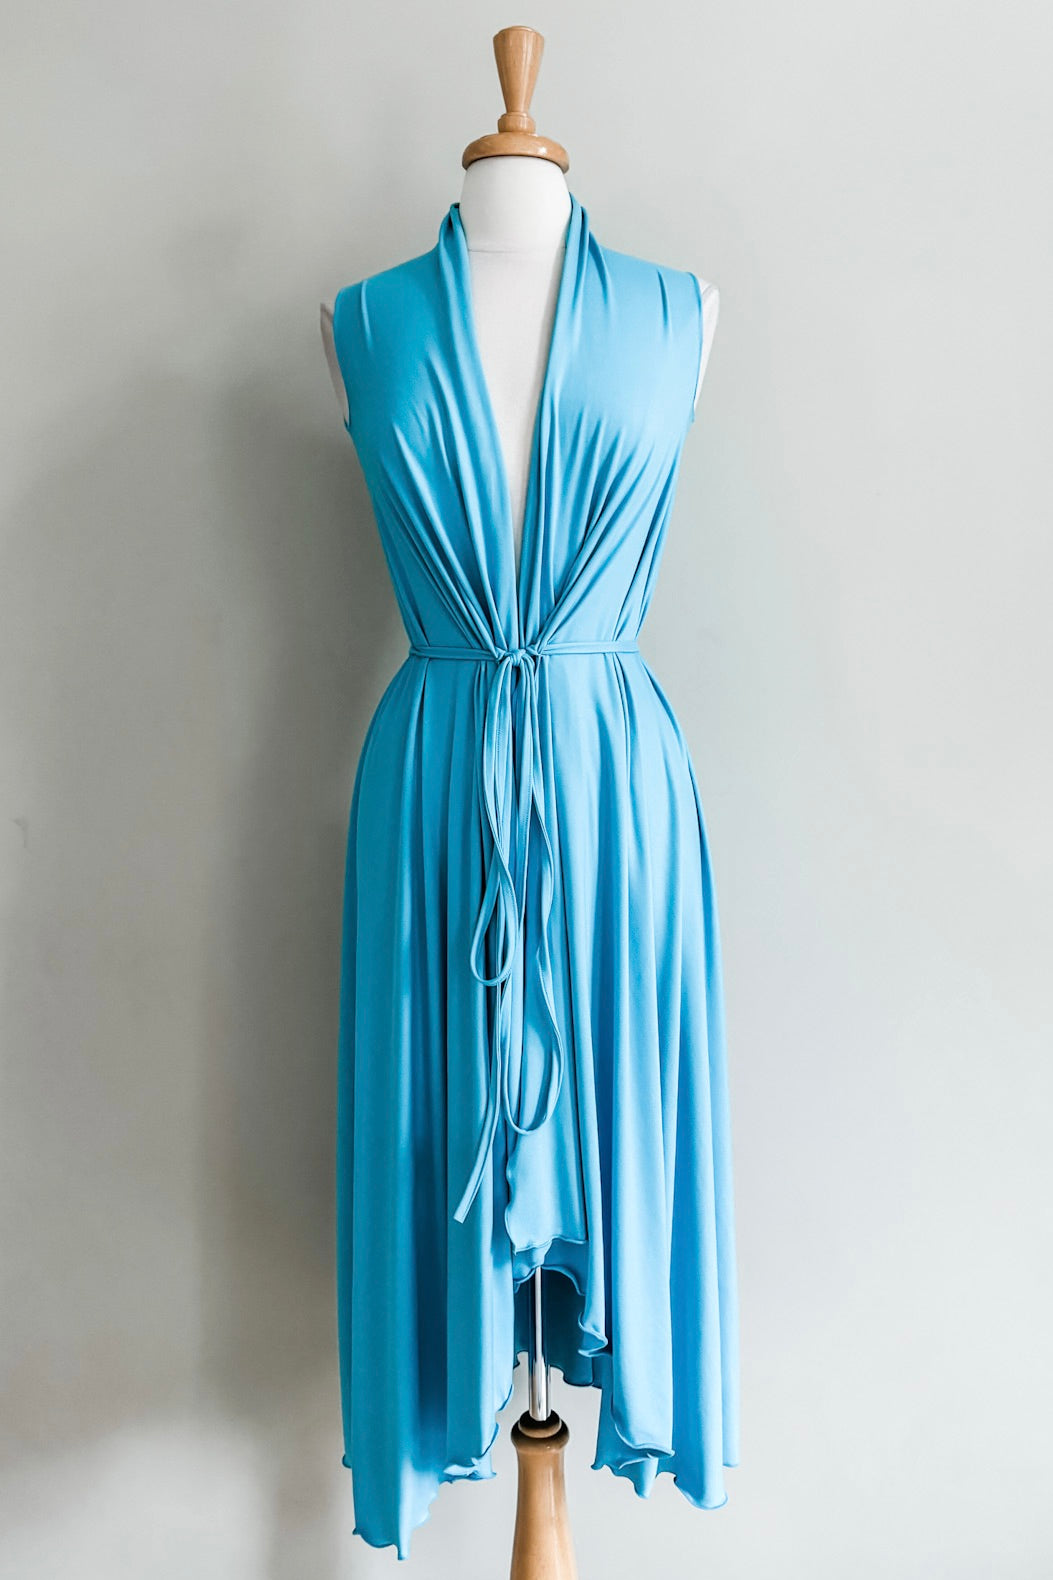 Goddess Dress from Diane Kroe